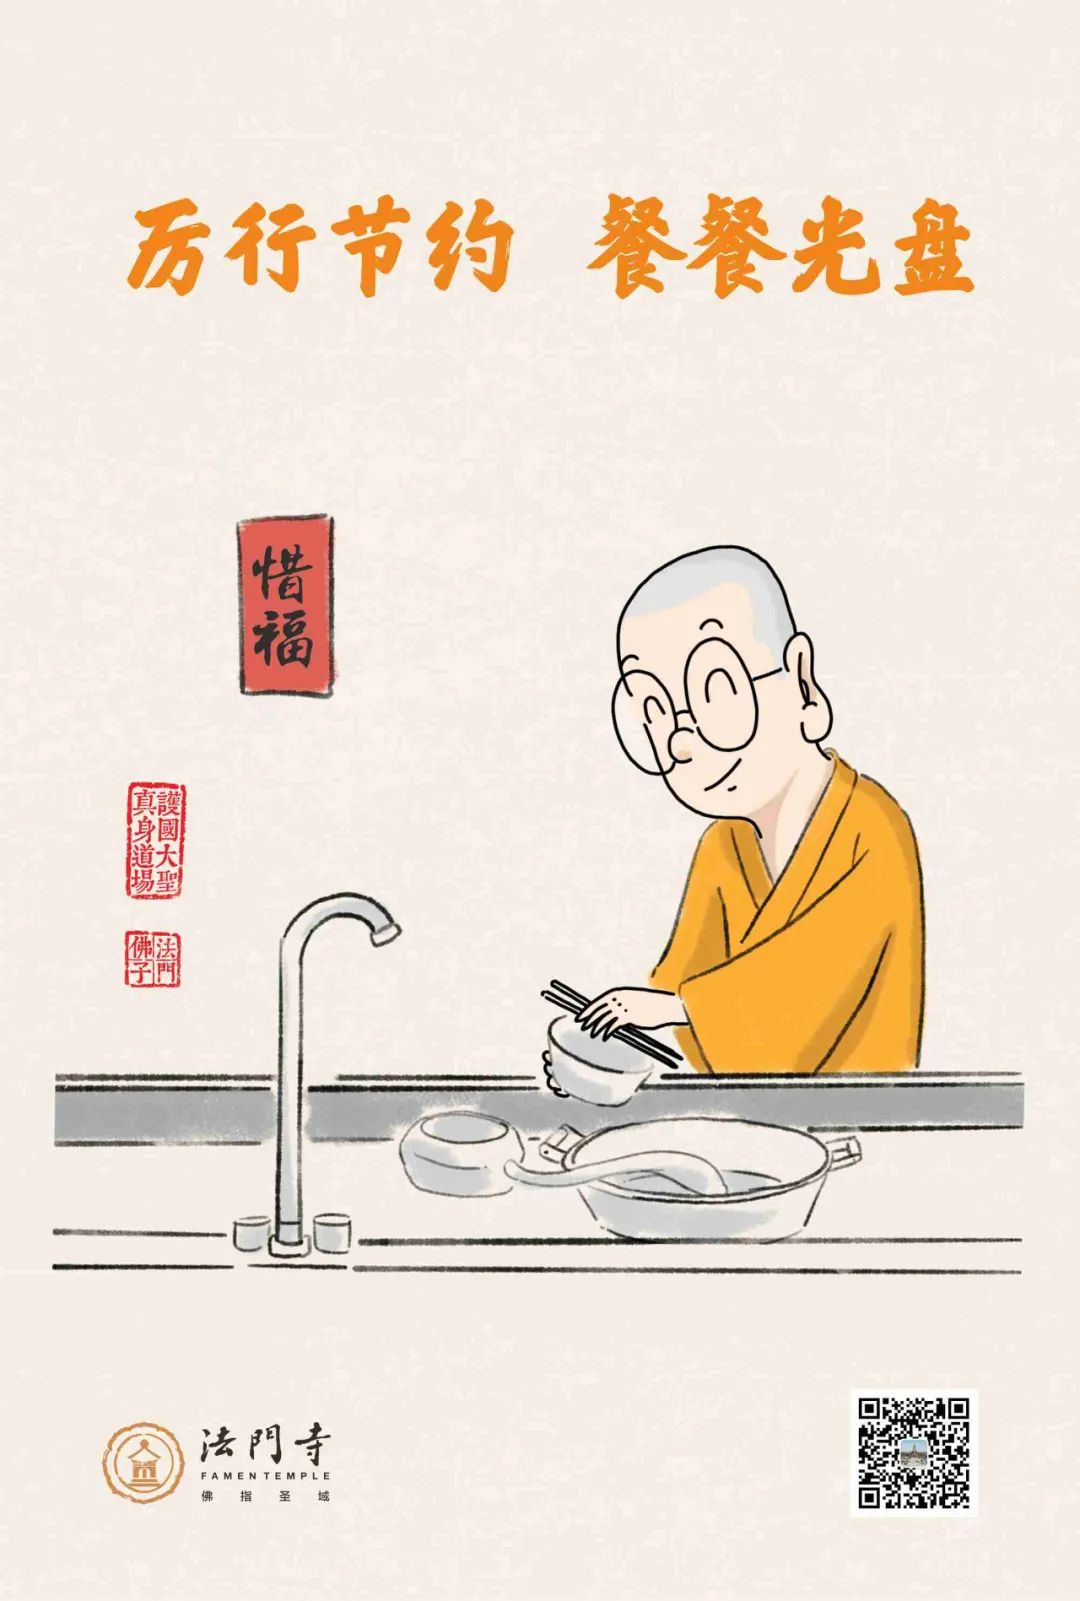 中国佛教协会倡议书：惜福惜物 厉行节约 积极履行社会责任